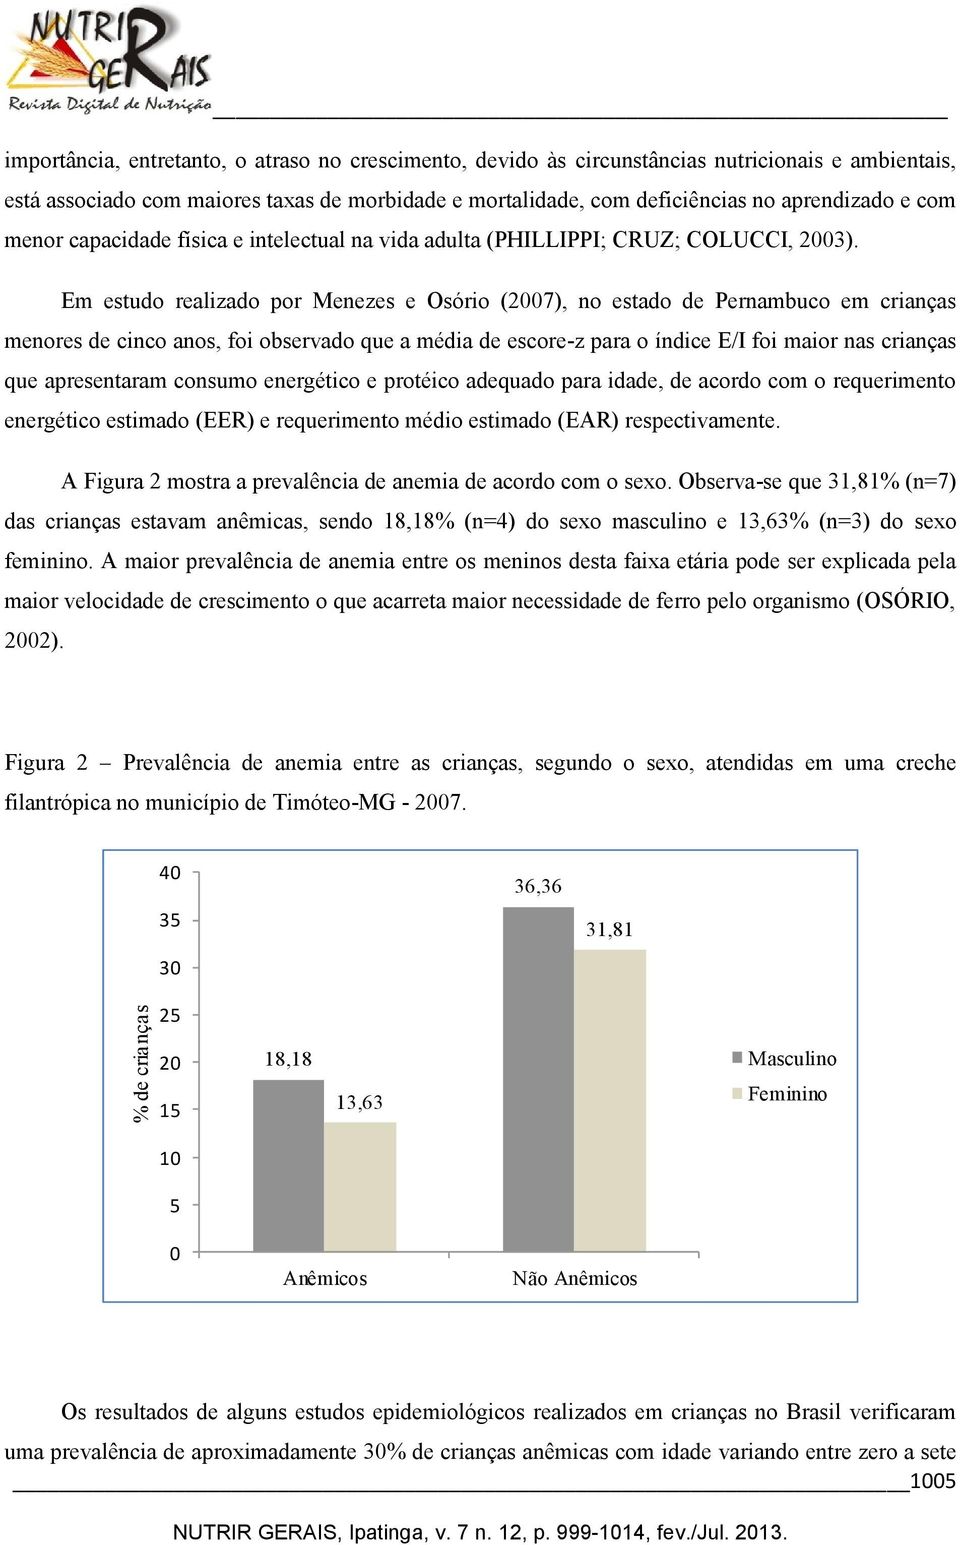 Em estudo realizado por Menezes e Osório (2007), no estado de Pernambuco em crianças menores de cinco anos, foi observado que a média de escore-z para o índice E/I foi maior nas crianças que